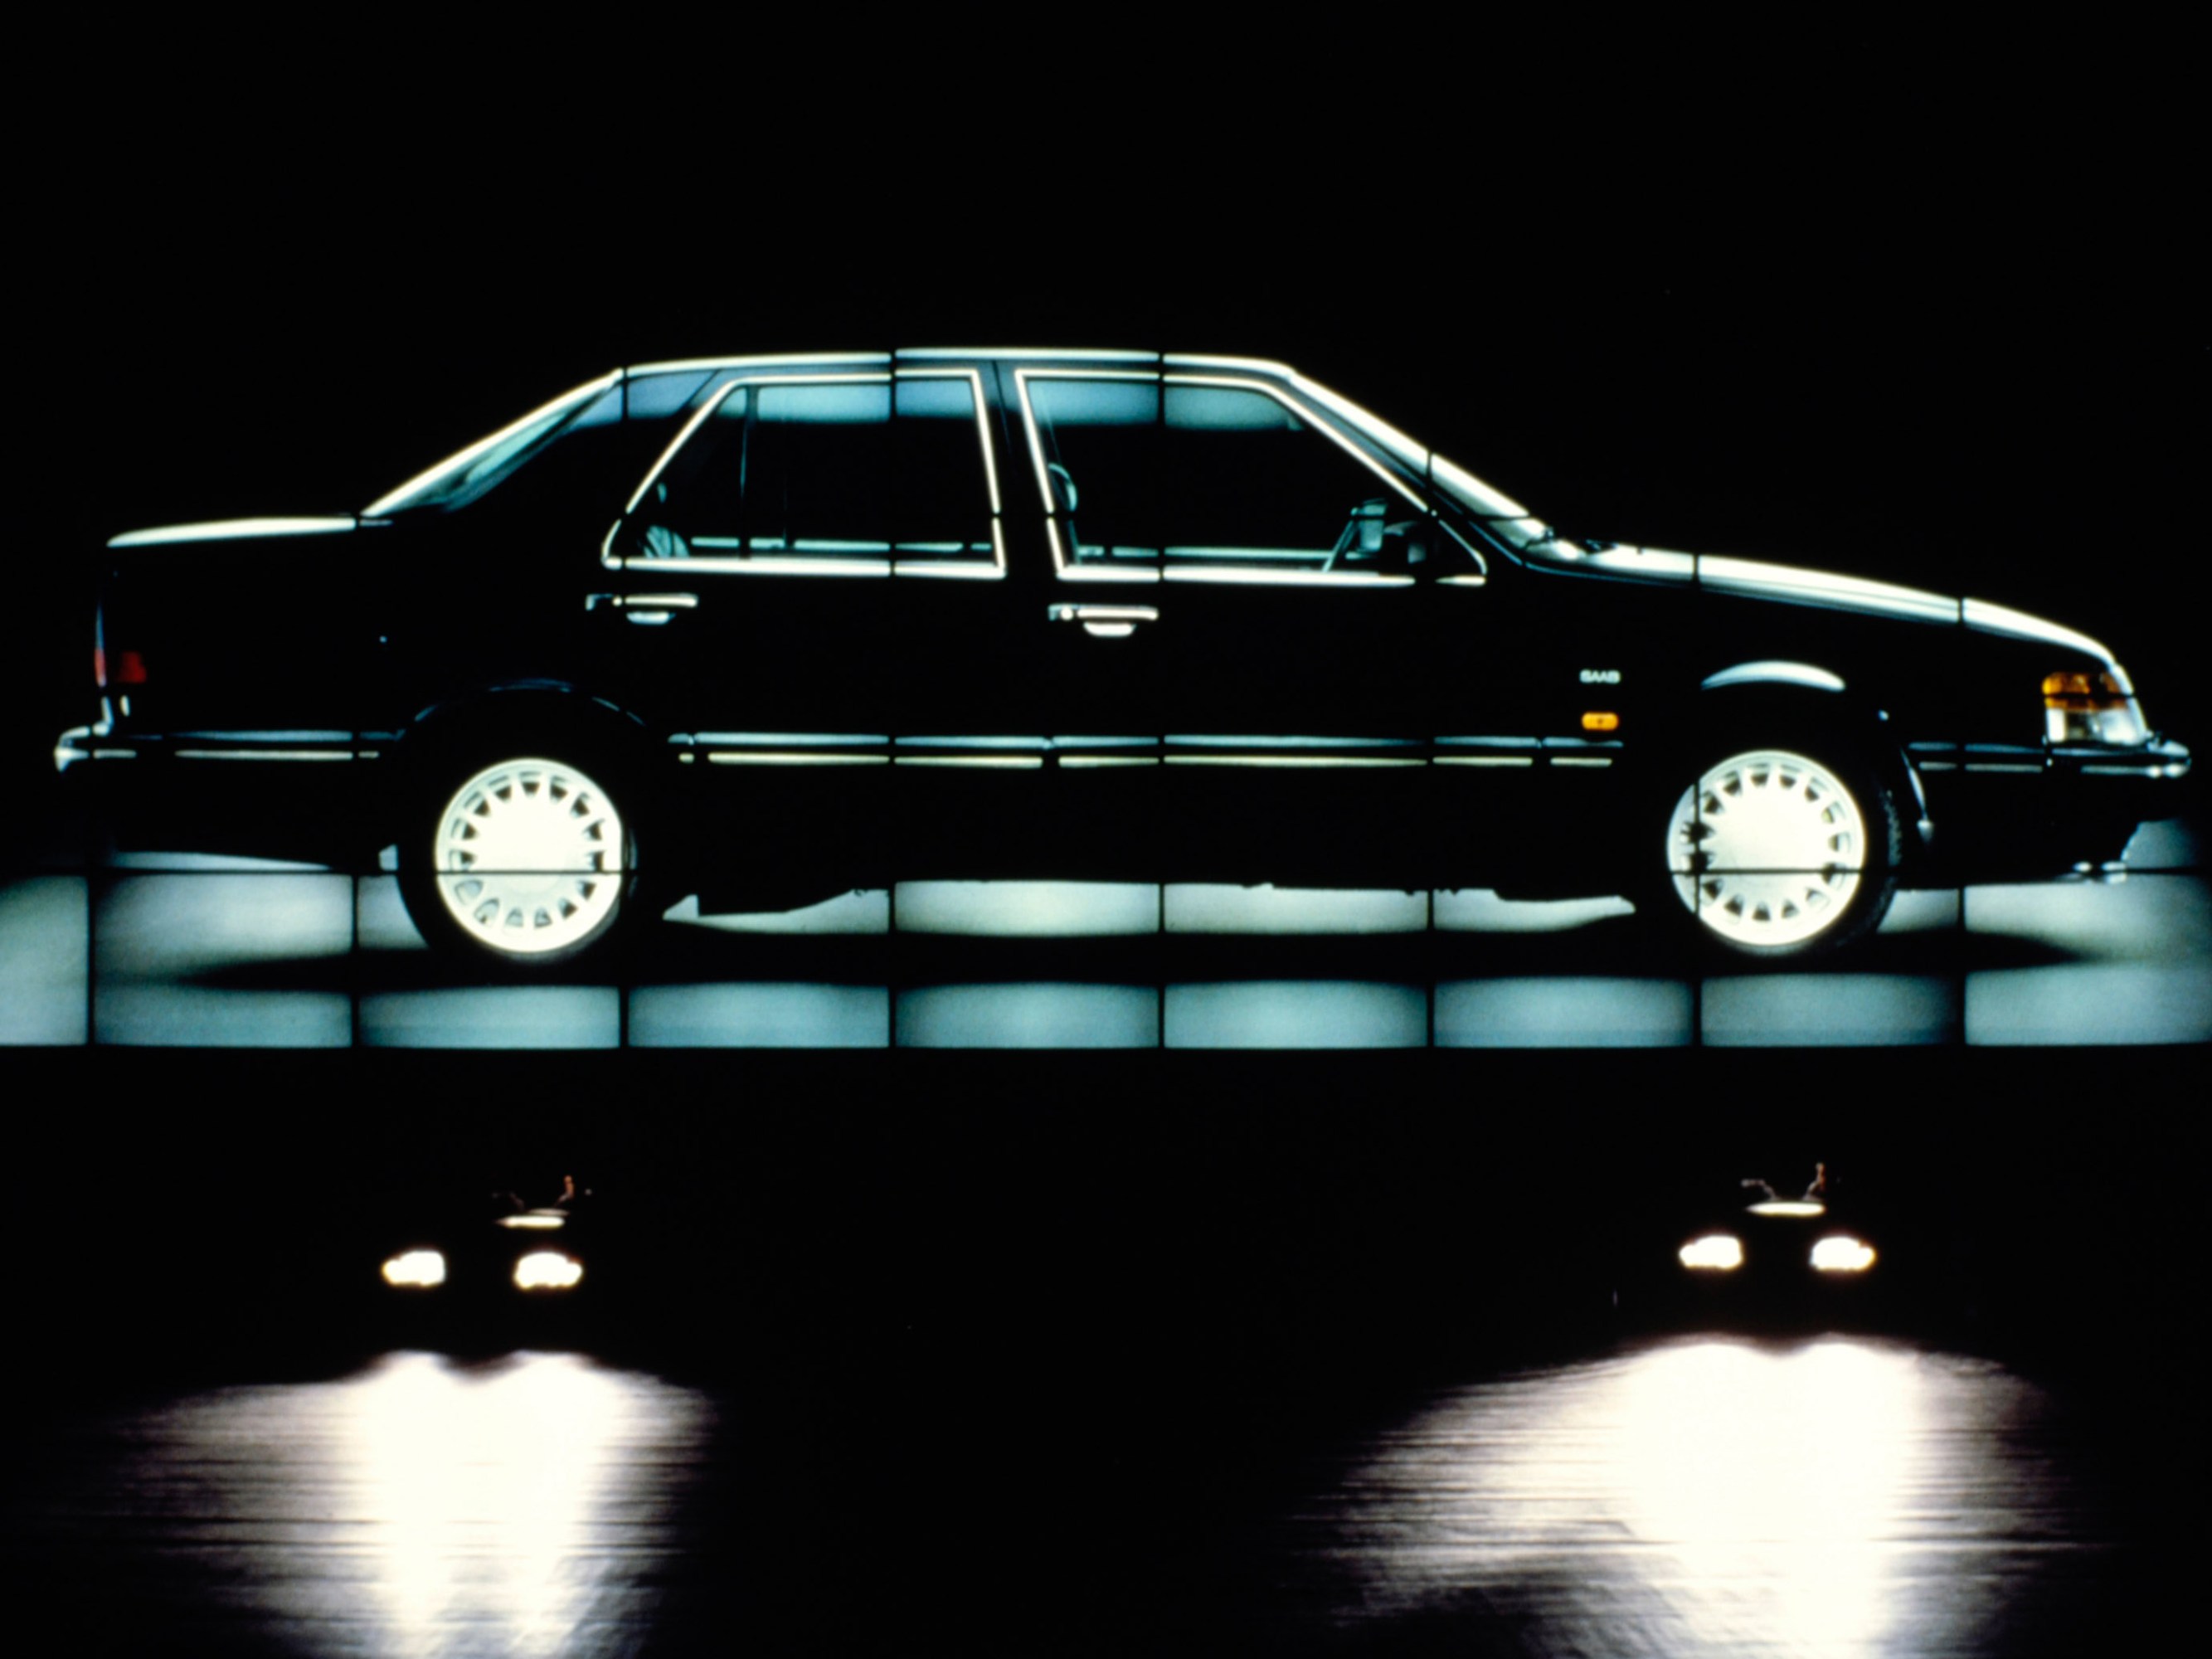 a 1988 Saab car on stage